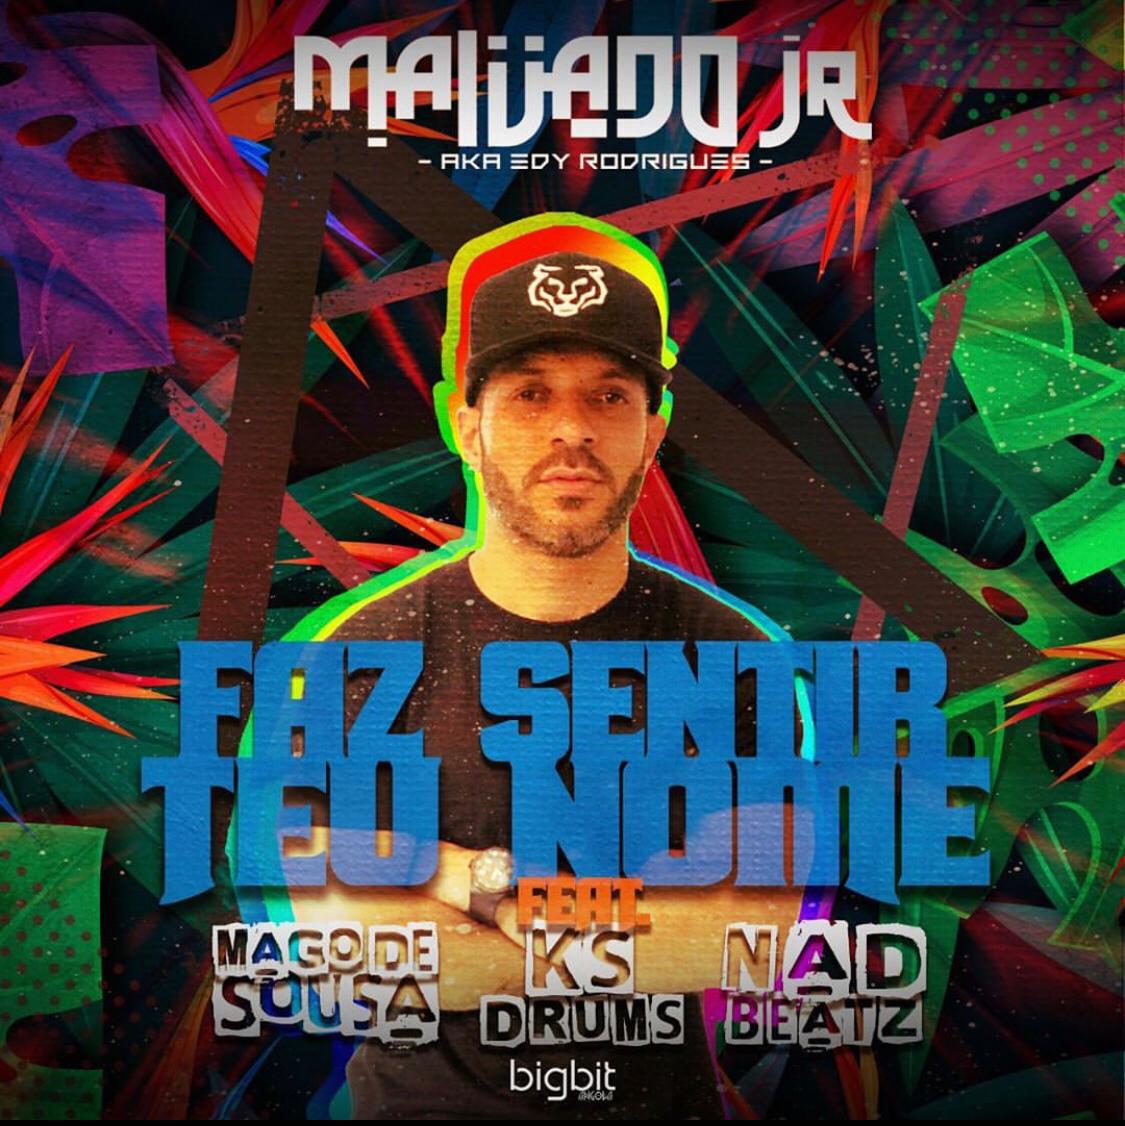 DJ Malvado Jr feat. Mago de Sousa, KS Drums & Nad Beatz - Faz Sentir Teu Nome